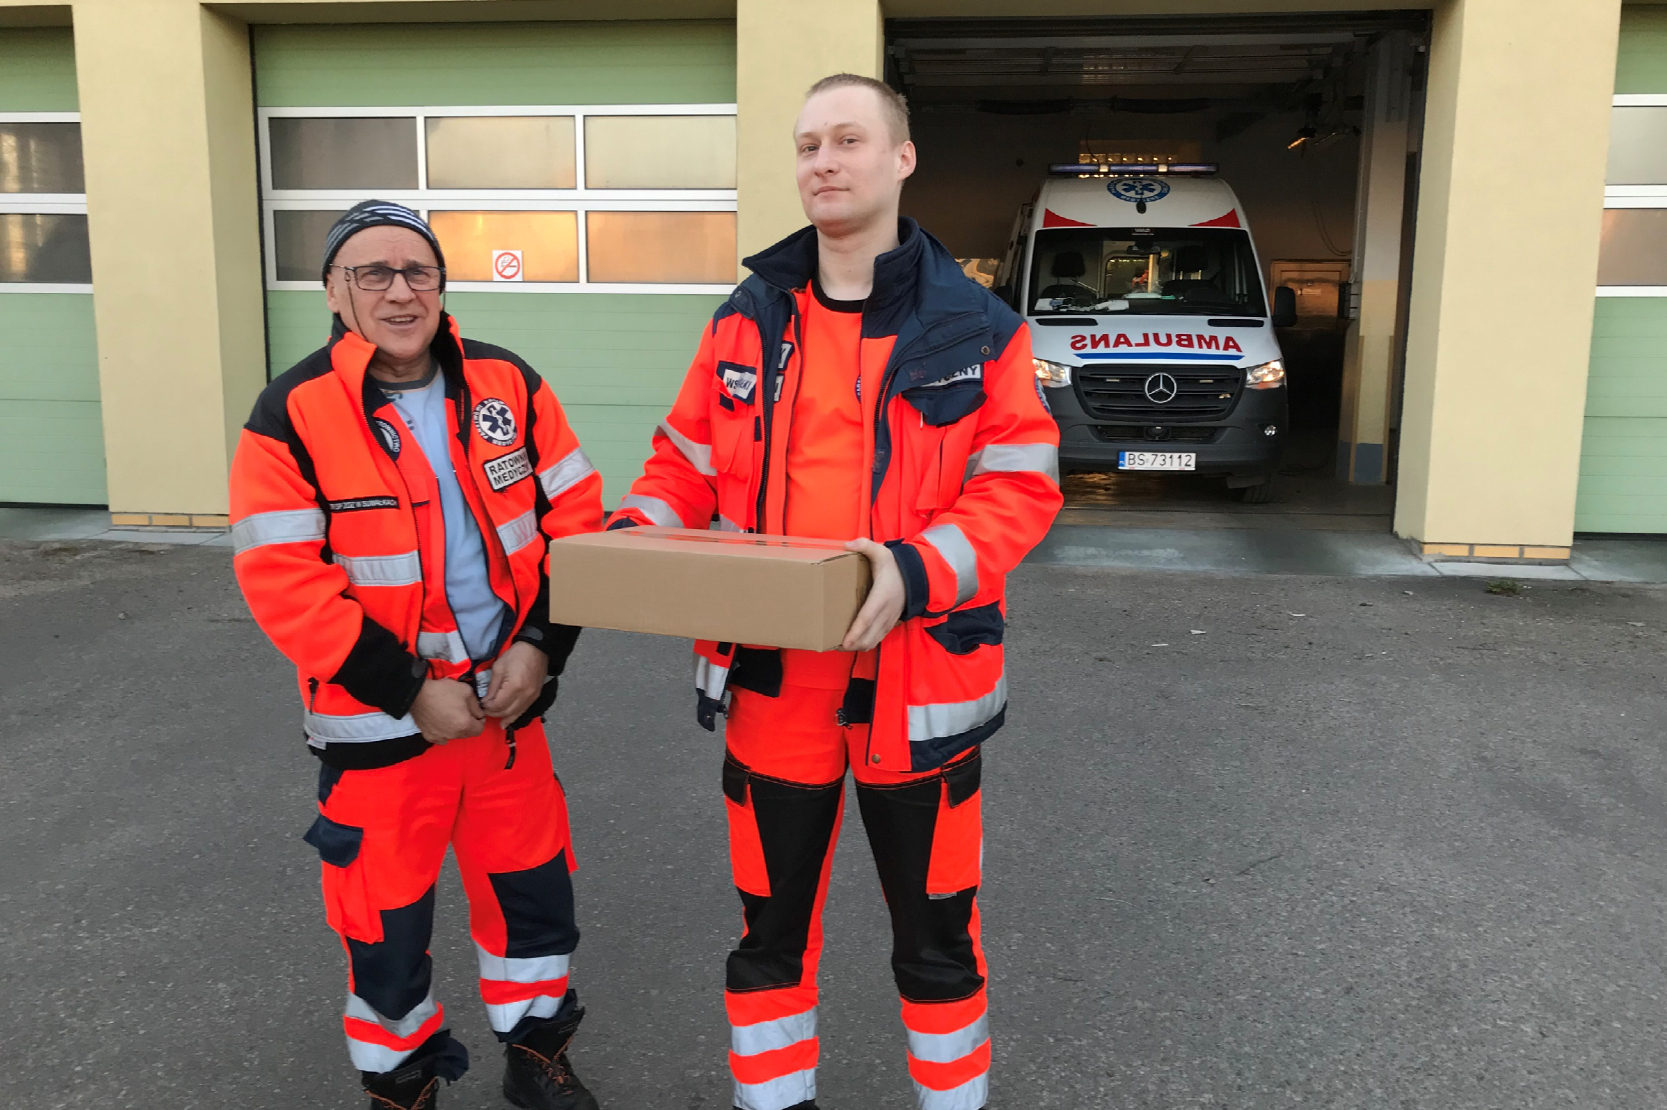 Dois homens com uniformes de socorristas segurando uma caixa